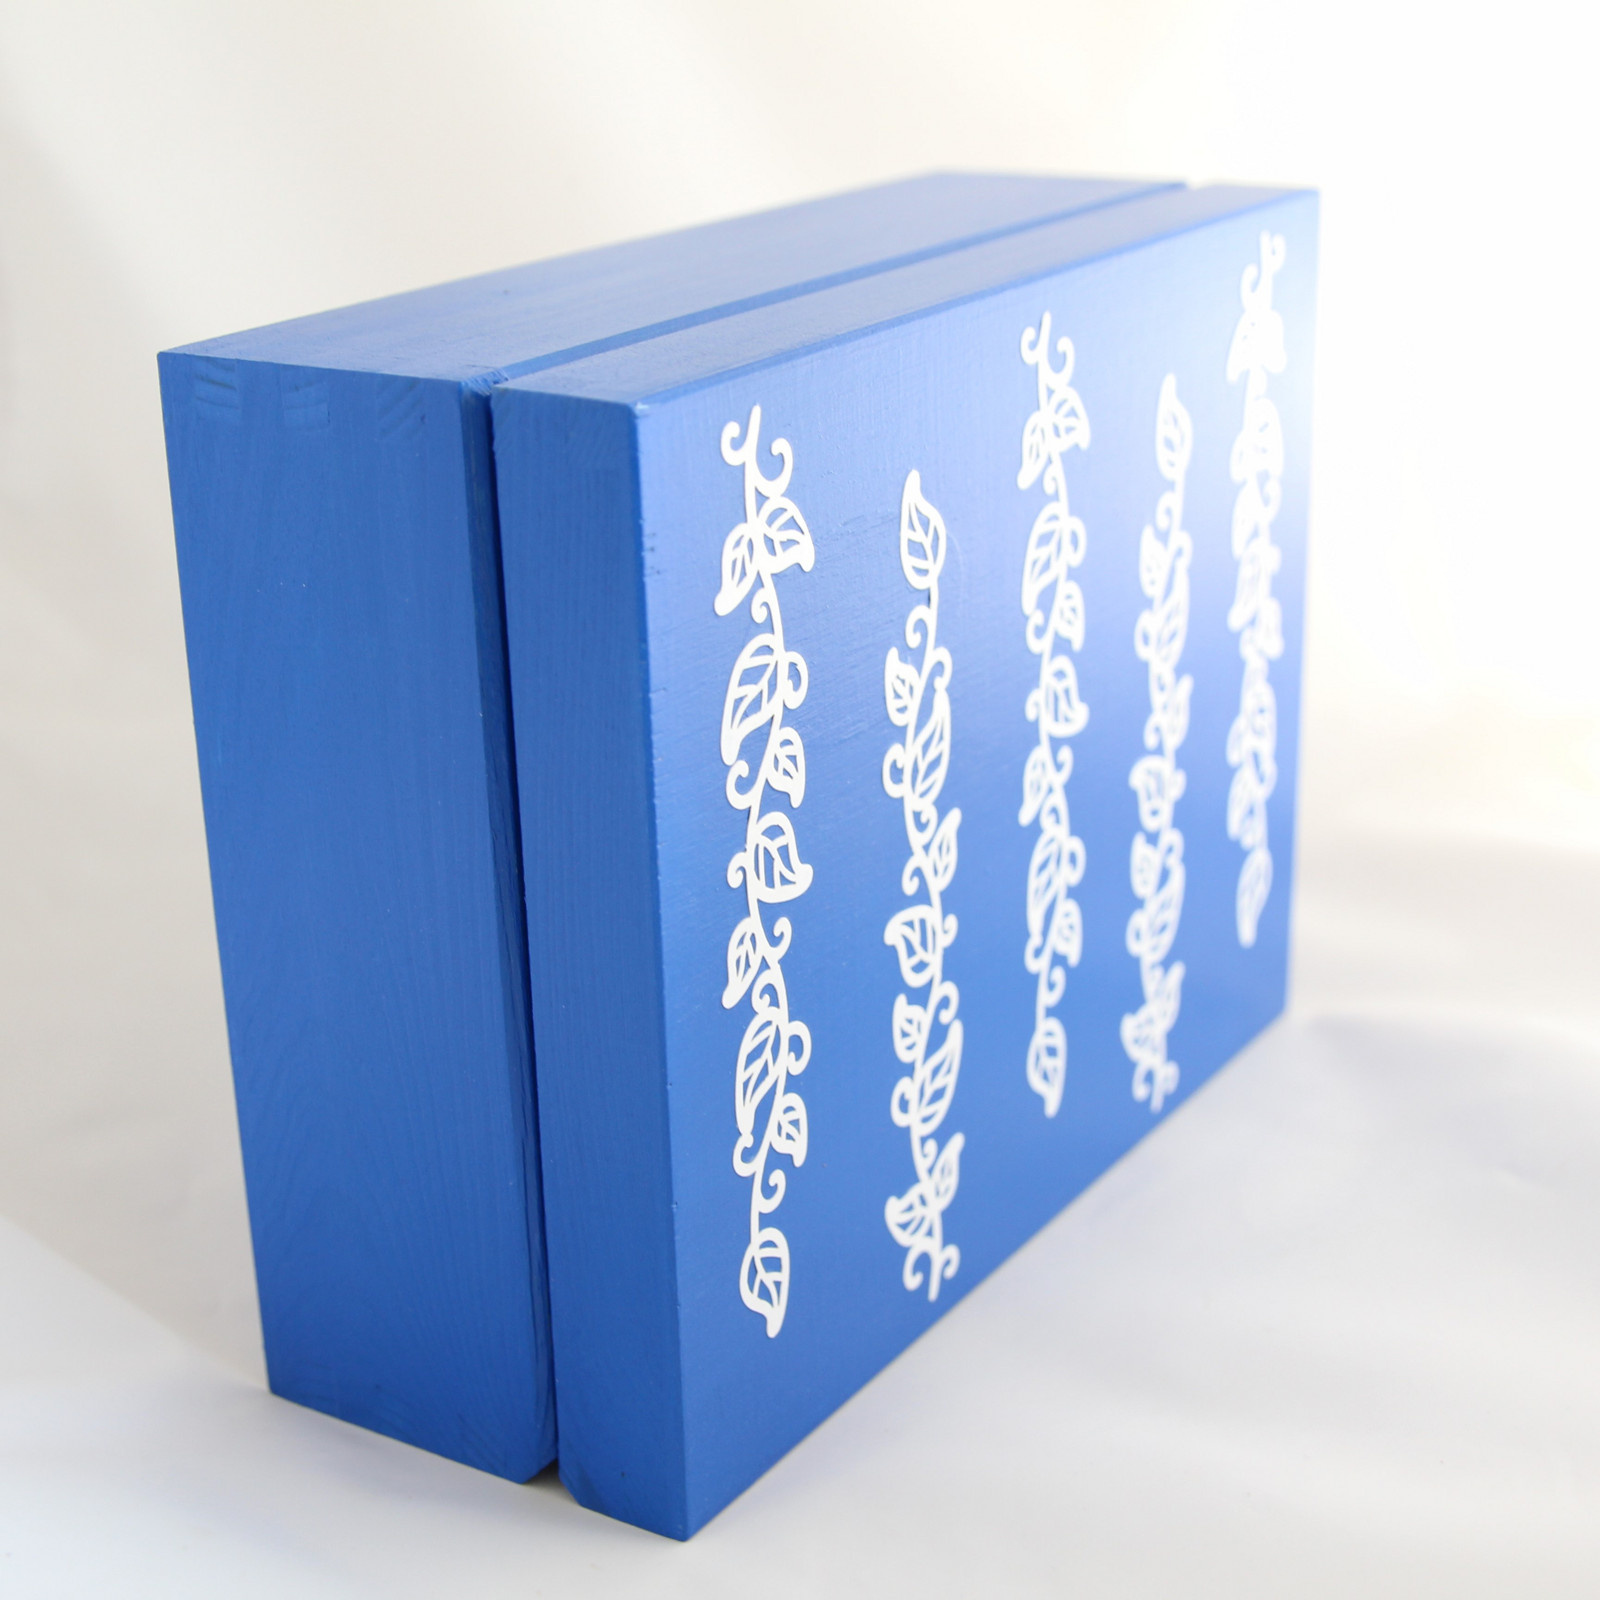 1.1 Krabička - Modrá, s bílými větvičkami